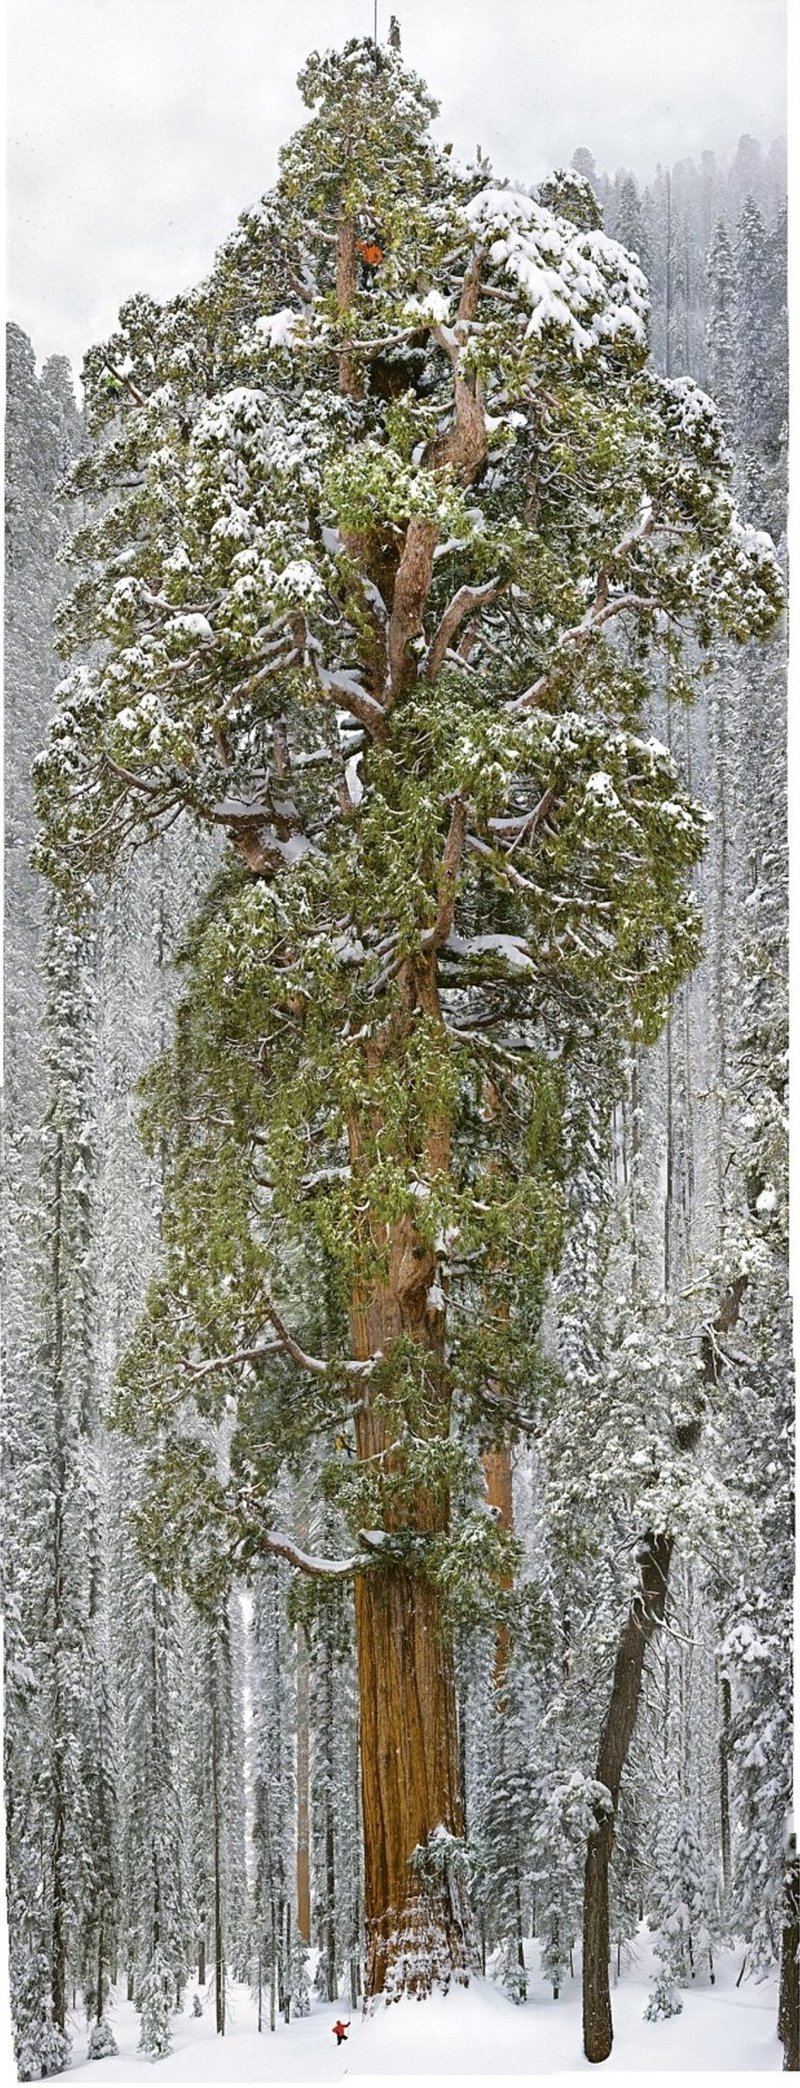 Фотографы 32 дня потратили, чтобы сфотографировать это дерево целиком